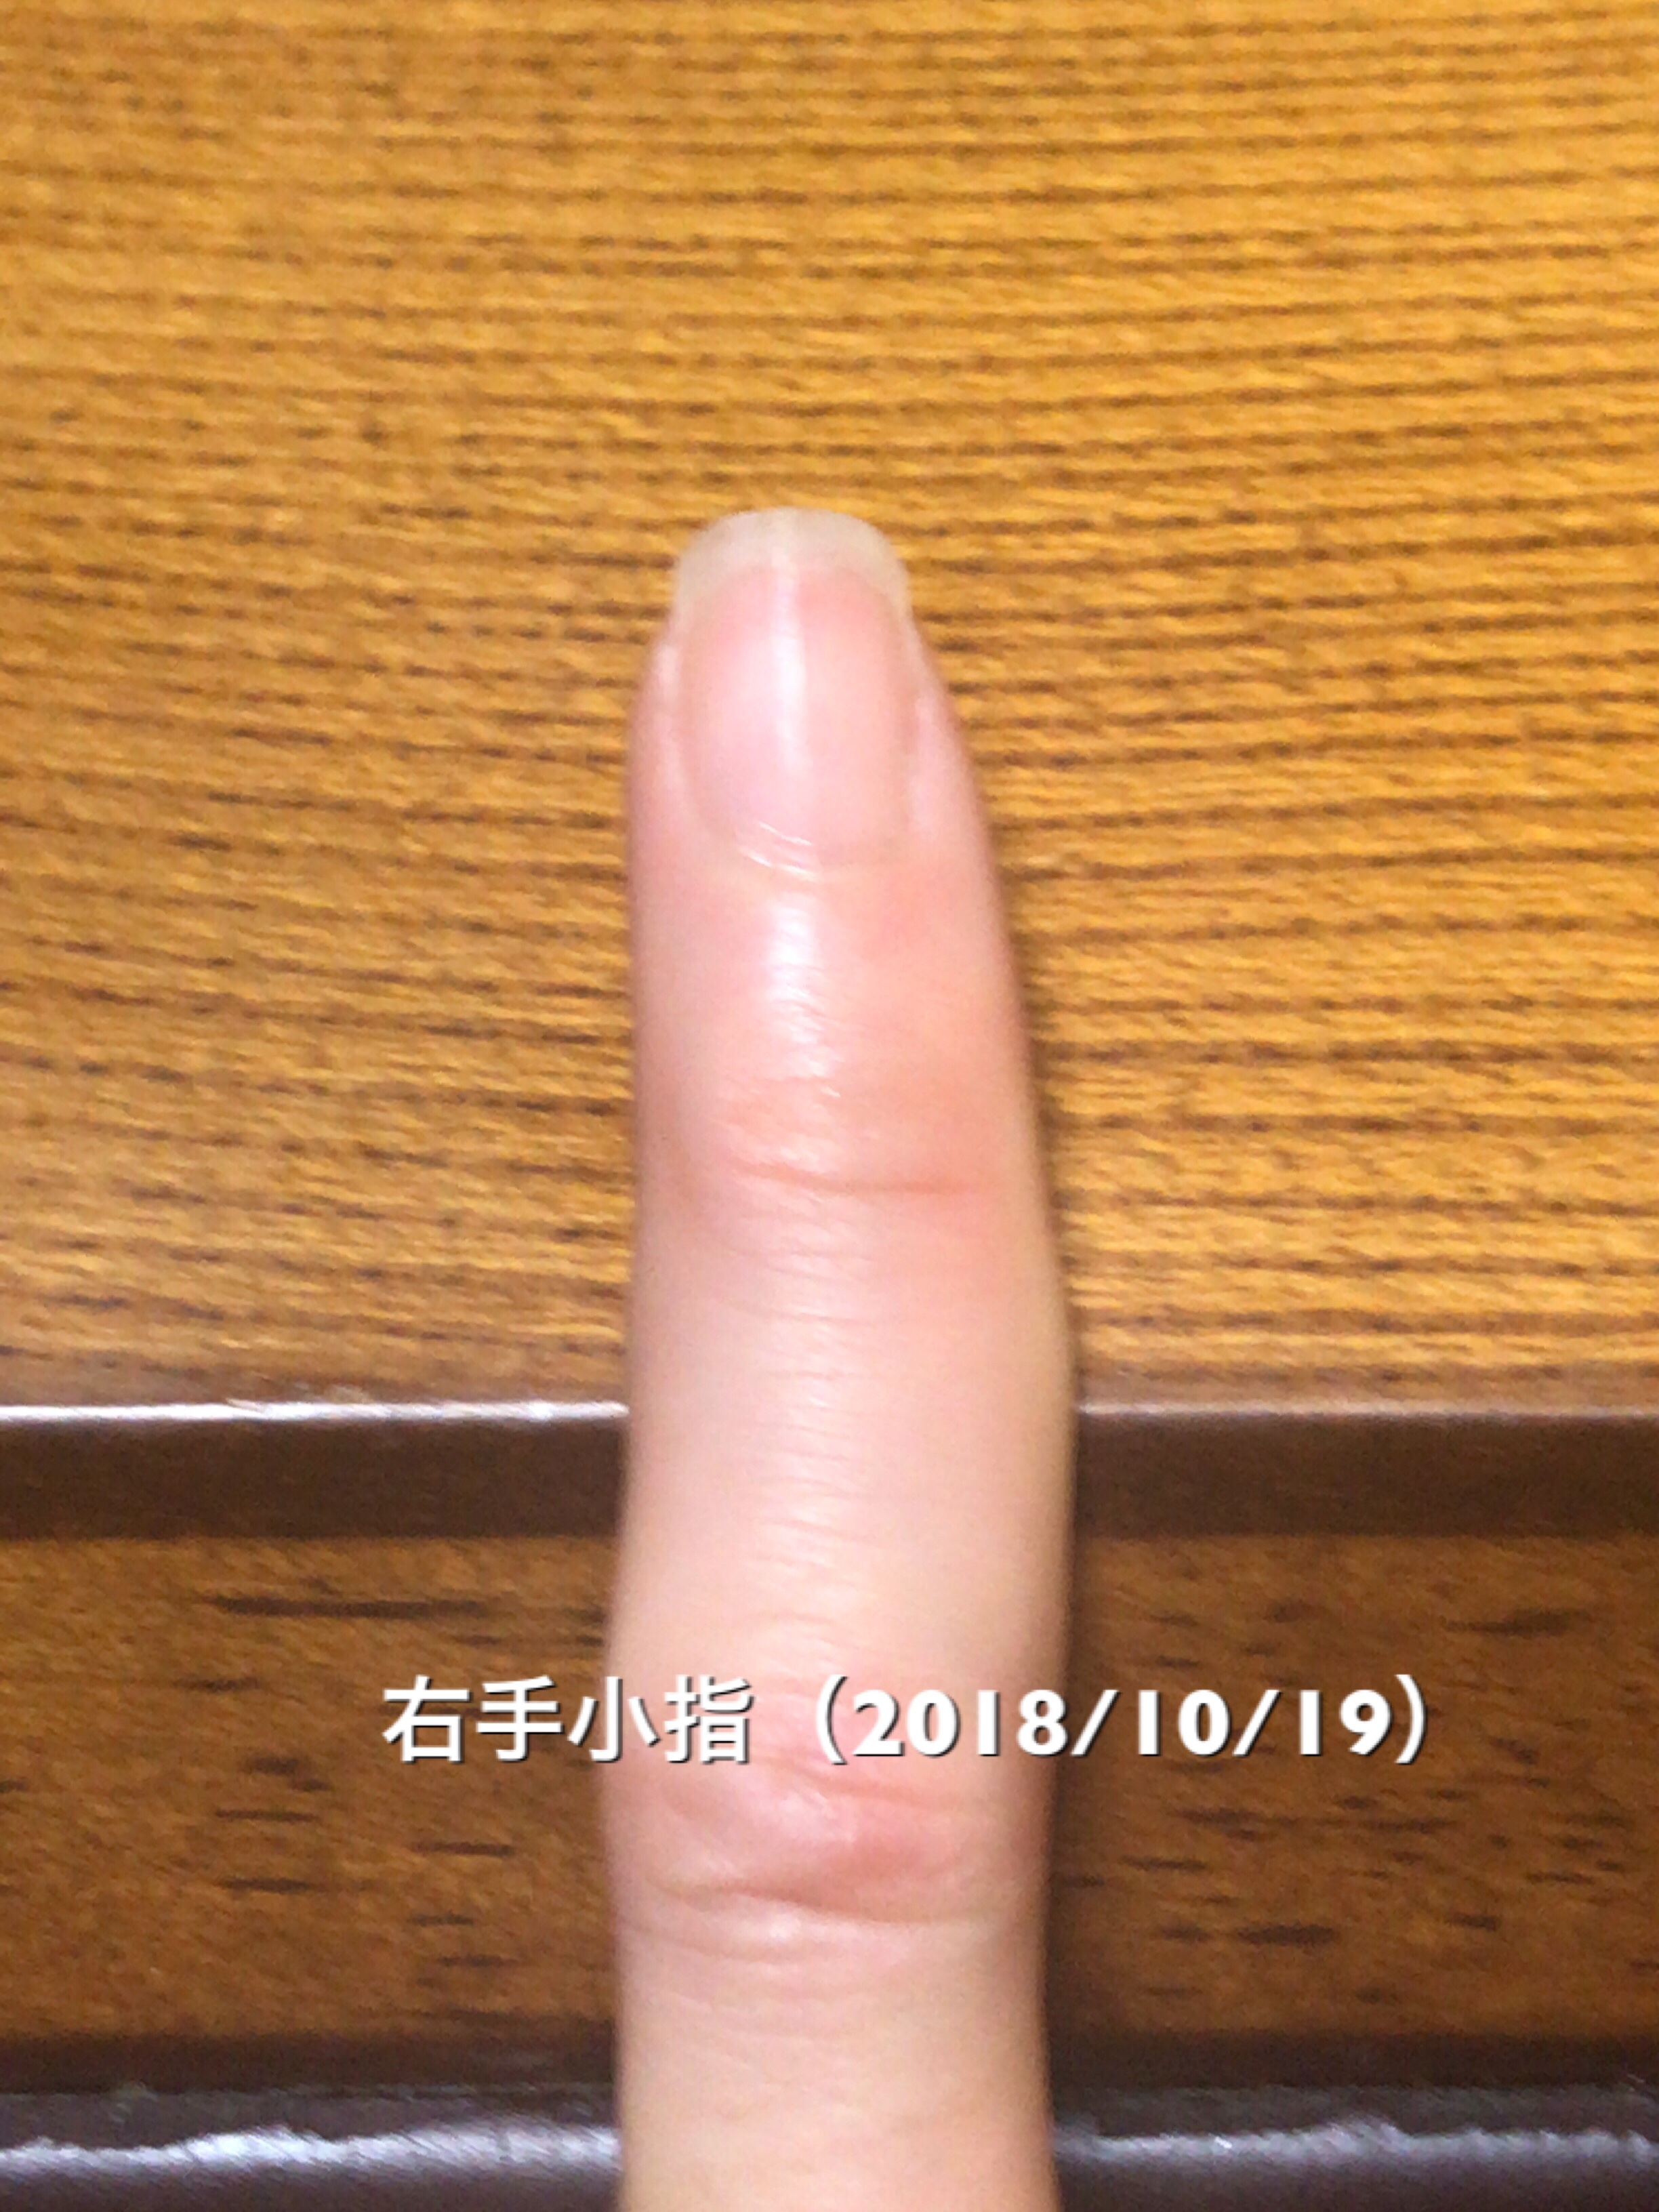 小指はかなり理想的な縦長になりつつあります。うまくうつせていませんが、ハイポニキウムも順調な成長。小指、薬指あたりをモデルケースに他の指の爪の形成を頑張っていきたいところです。という写真